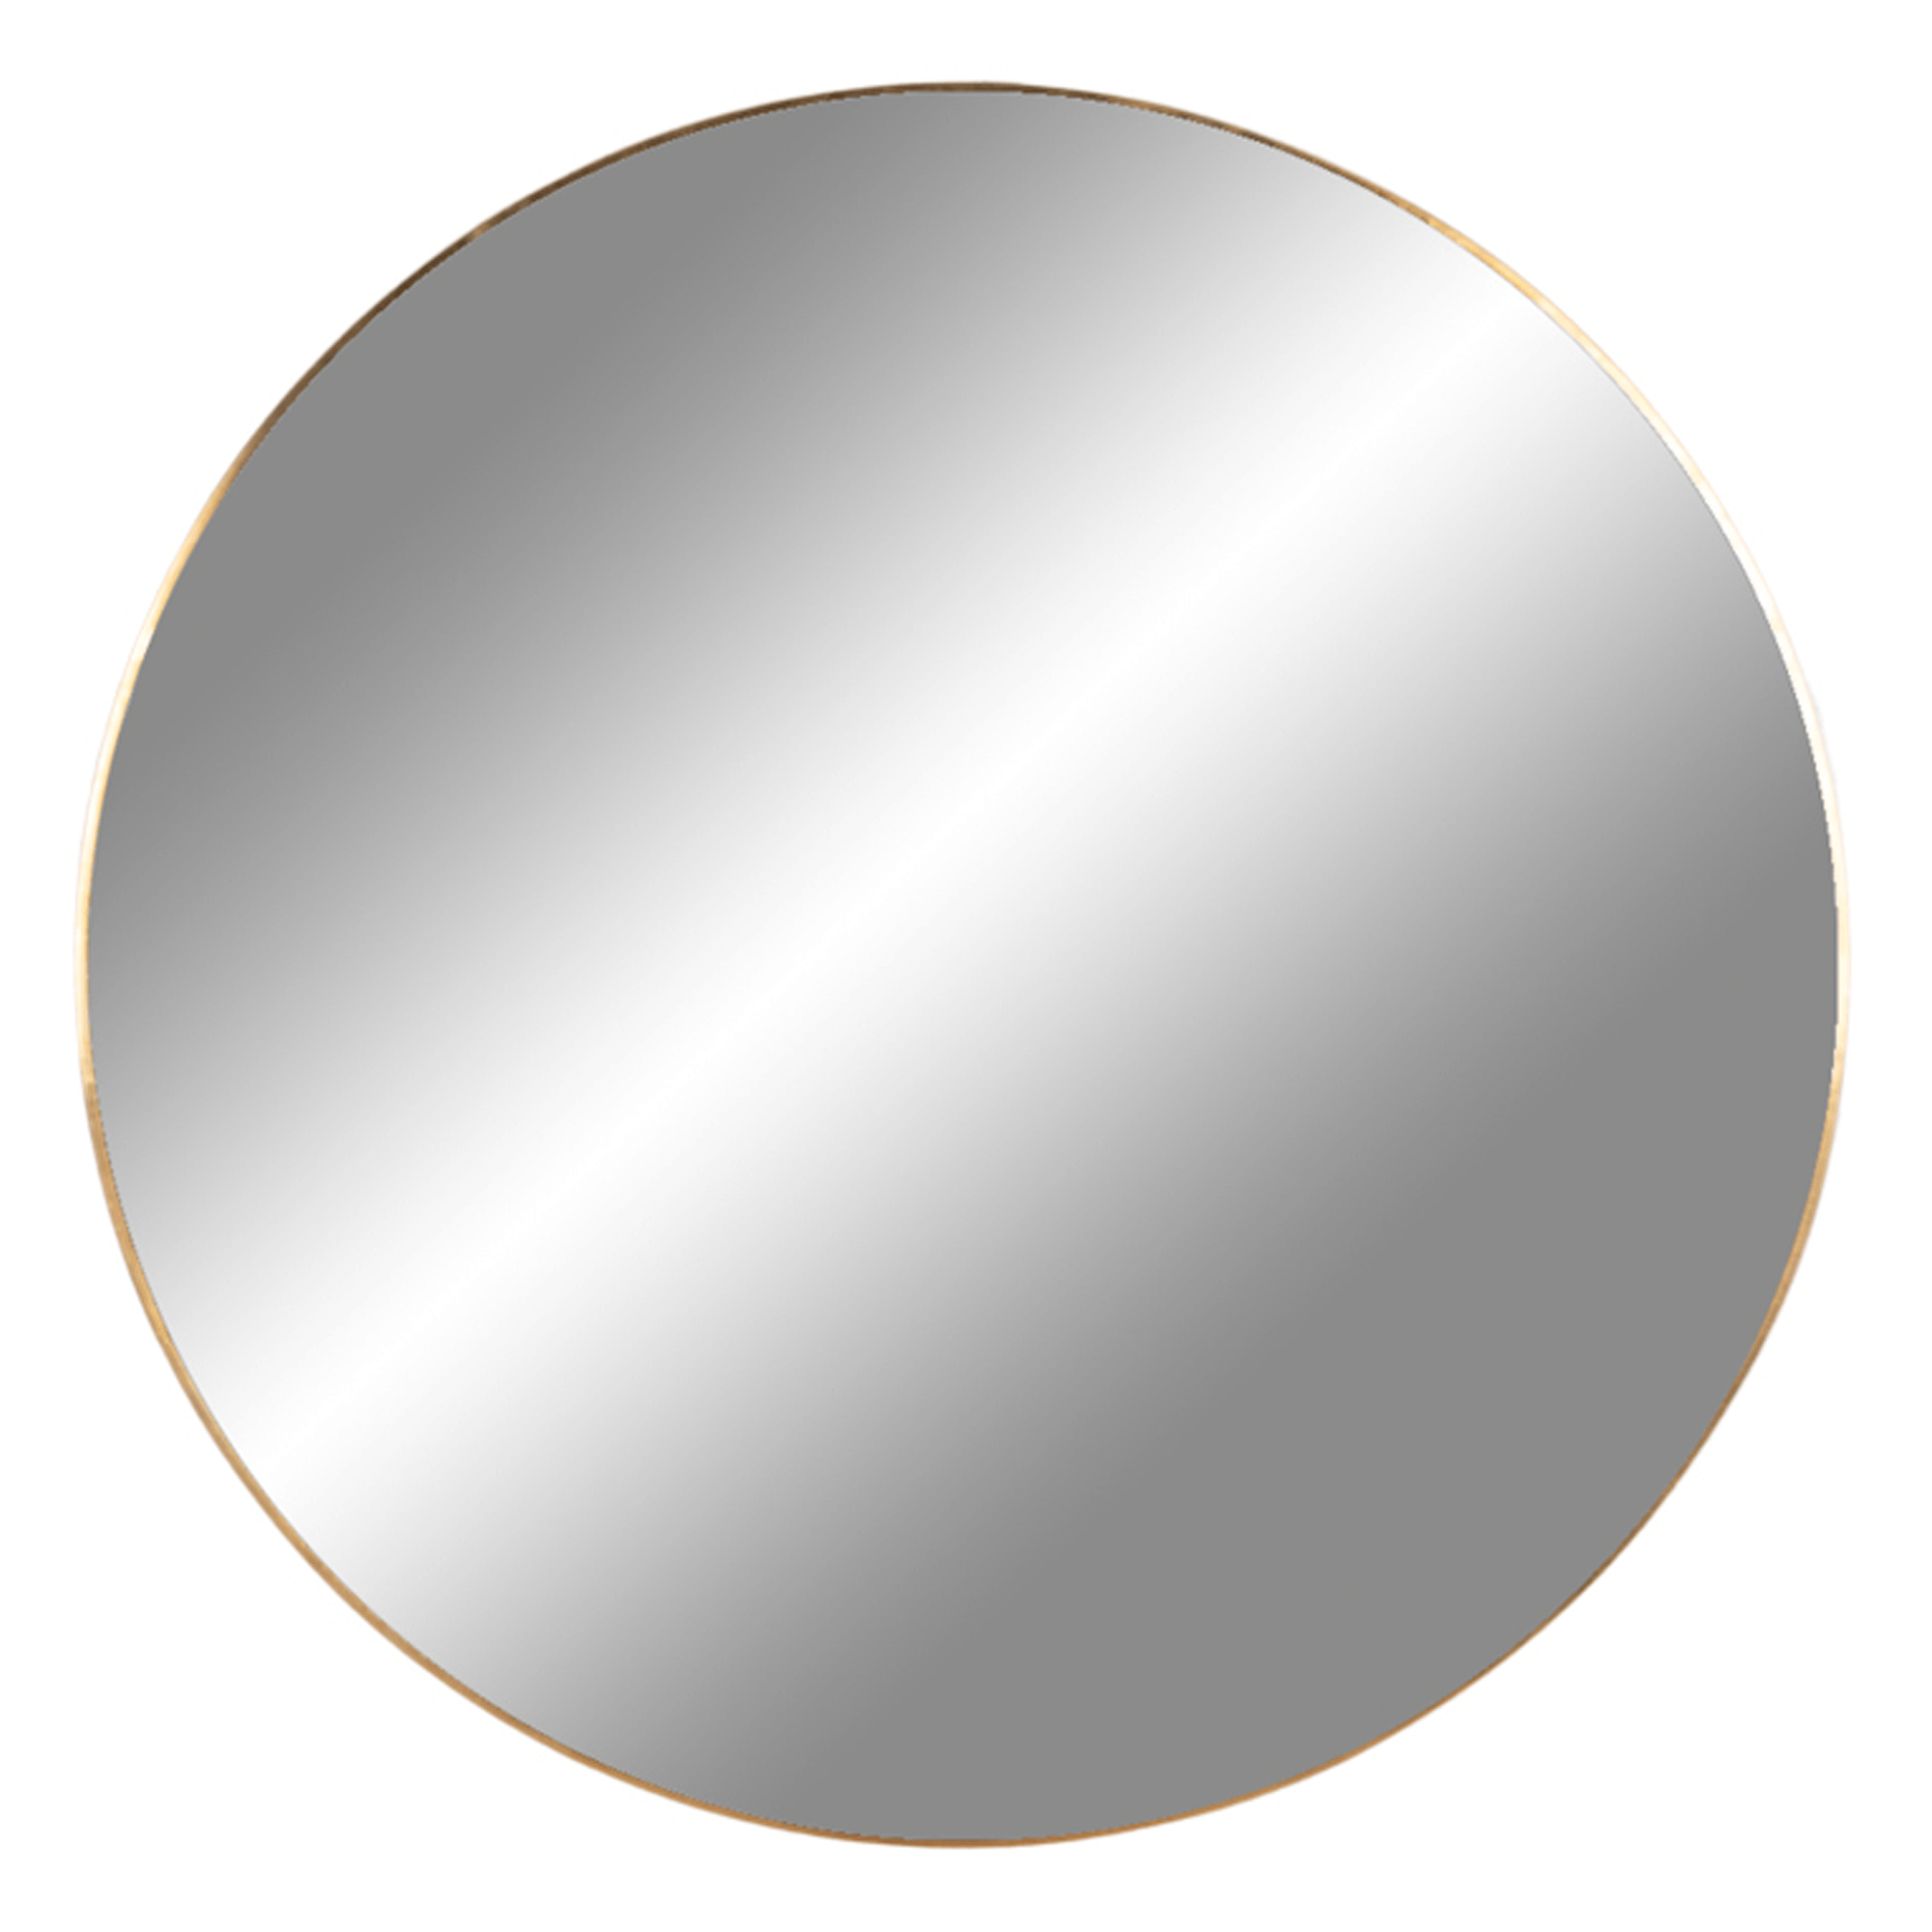 Billede af Cirkel spejl med messing ramme, Ø 60 cm. hos Naga.dk